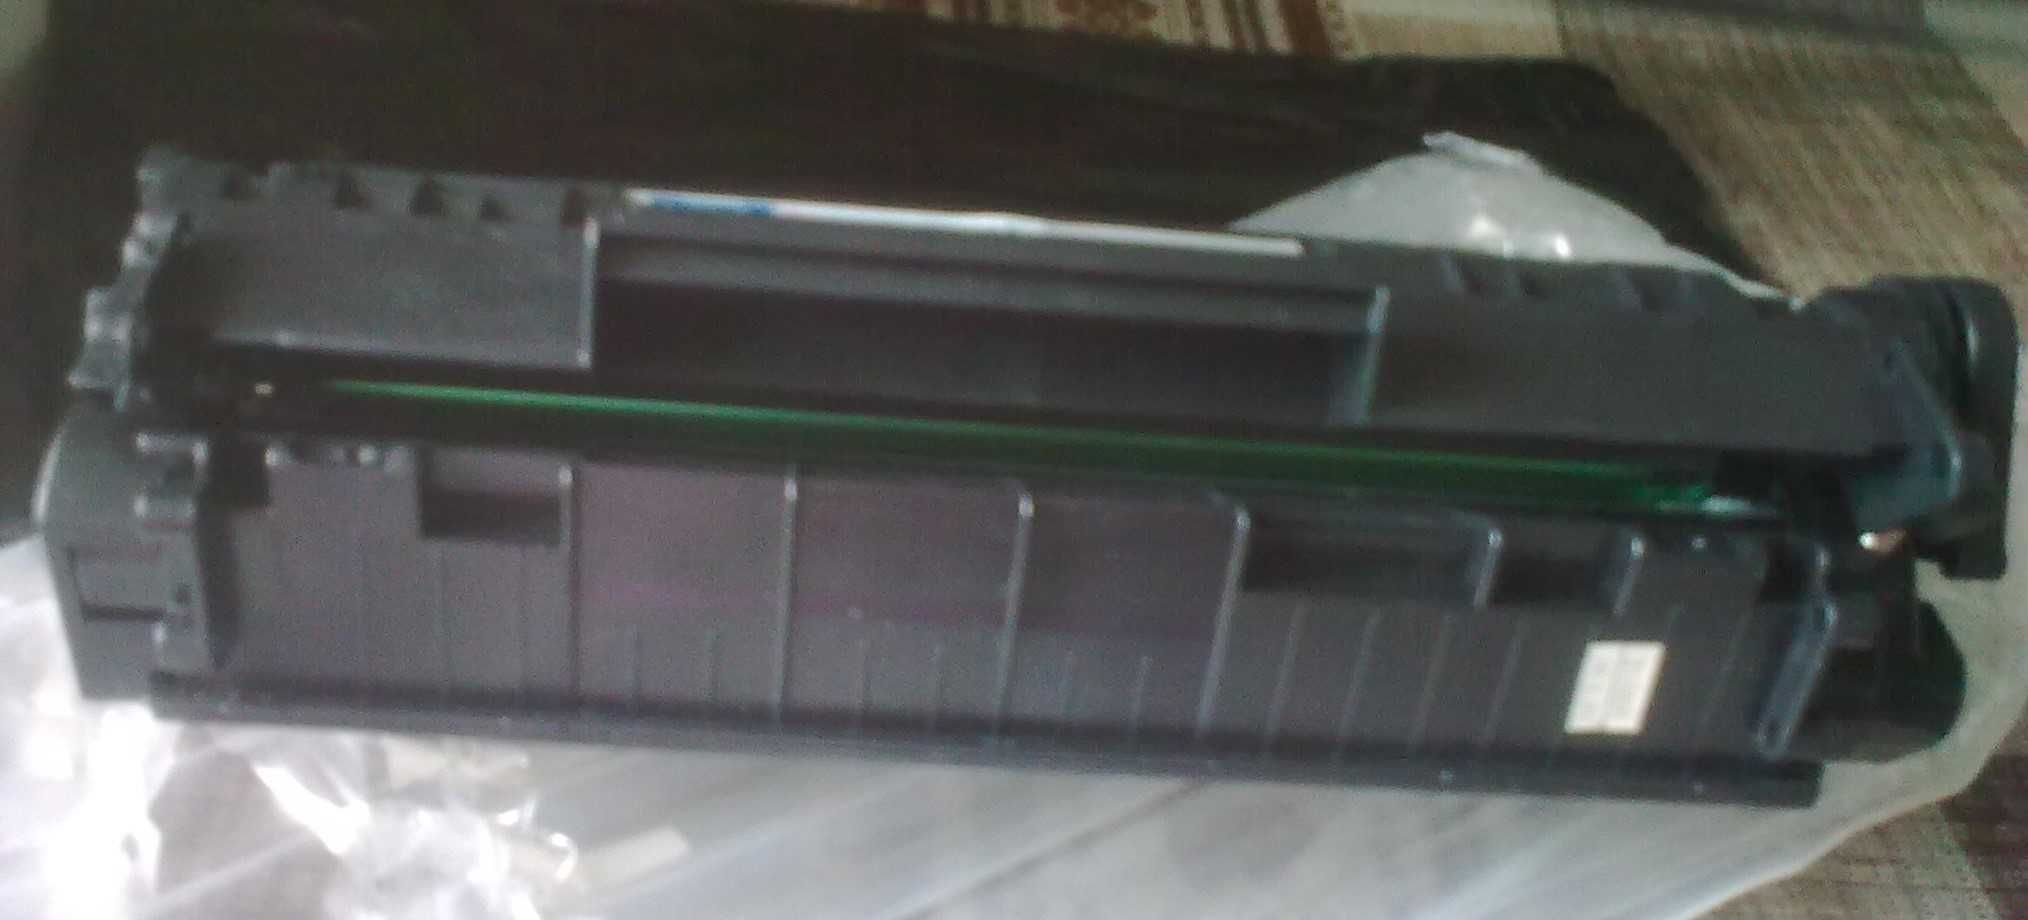 картридж Q 2612A 12A лазерный черный принтер оригинал, аналоги, новые